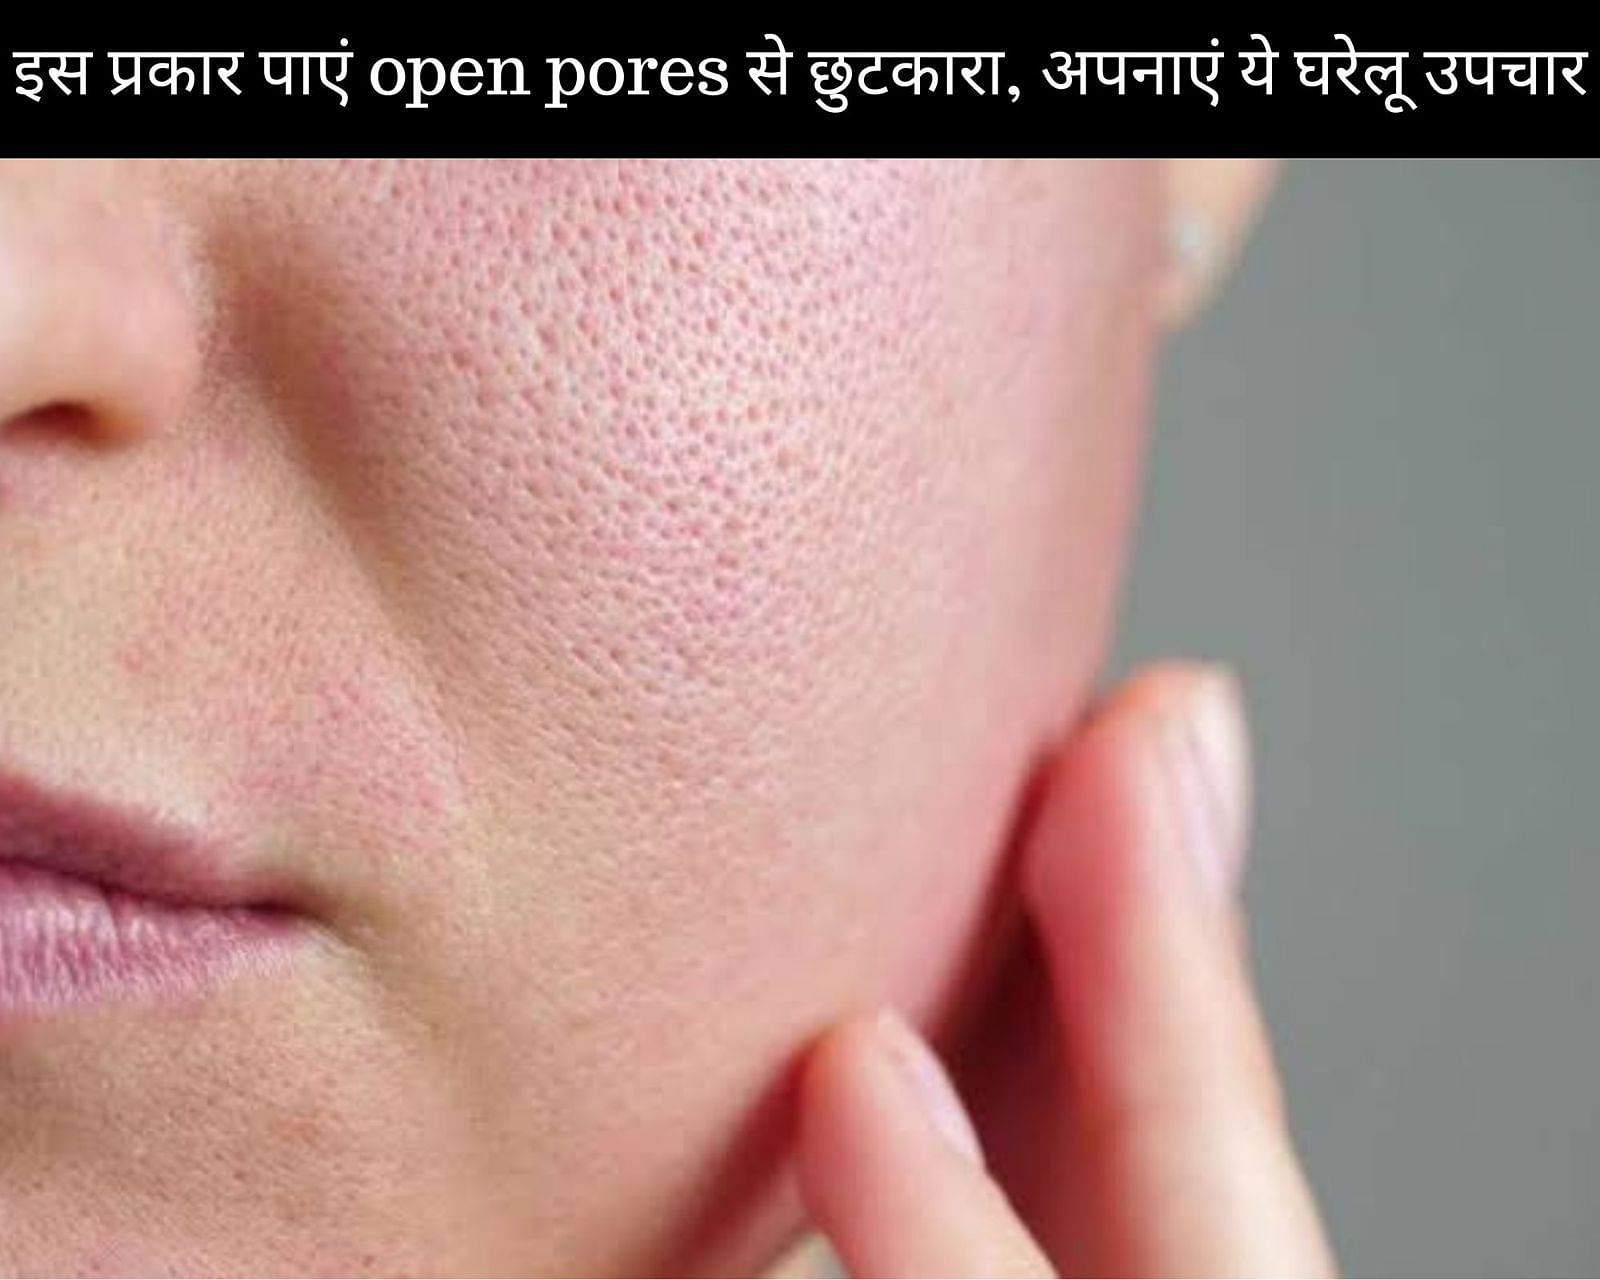 इस प्रकार पाएं open pores से छुटकारा, अपनाएं ये 12 घरेलू उपचार (फोटो - sportskeedaहिन्दी)